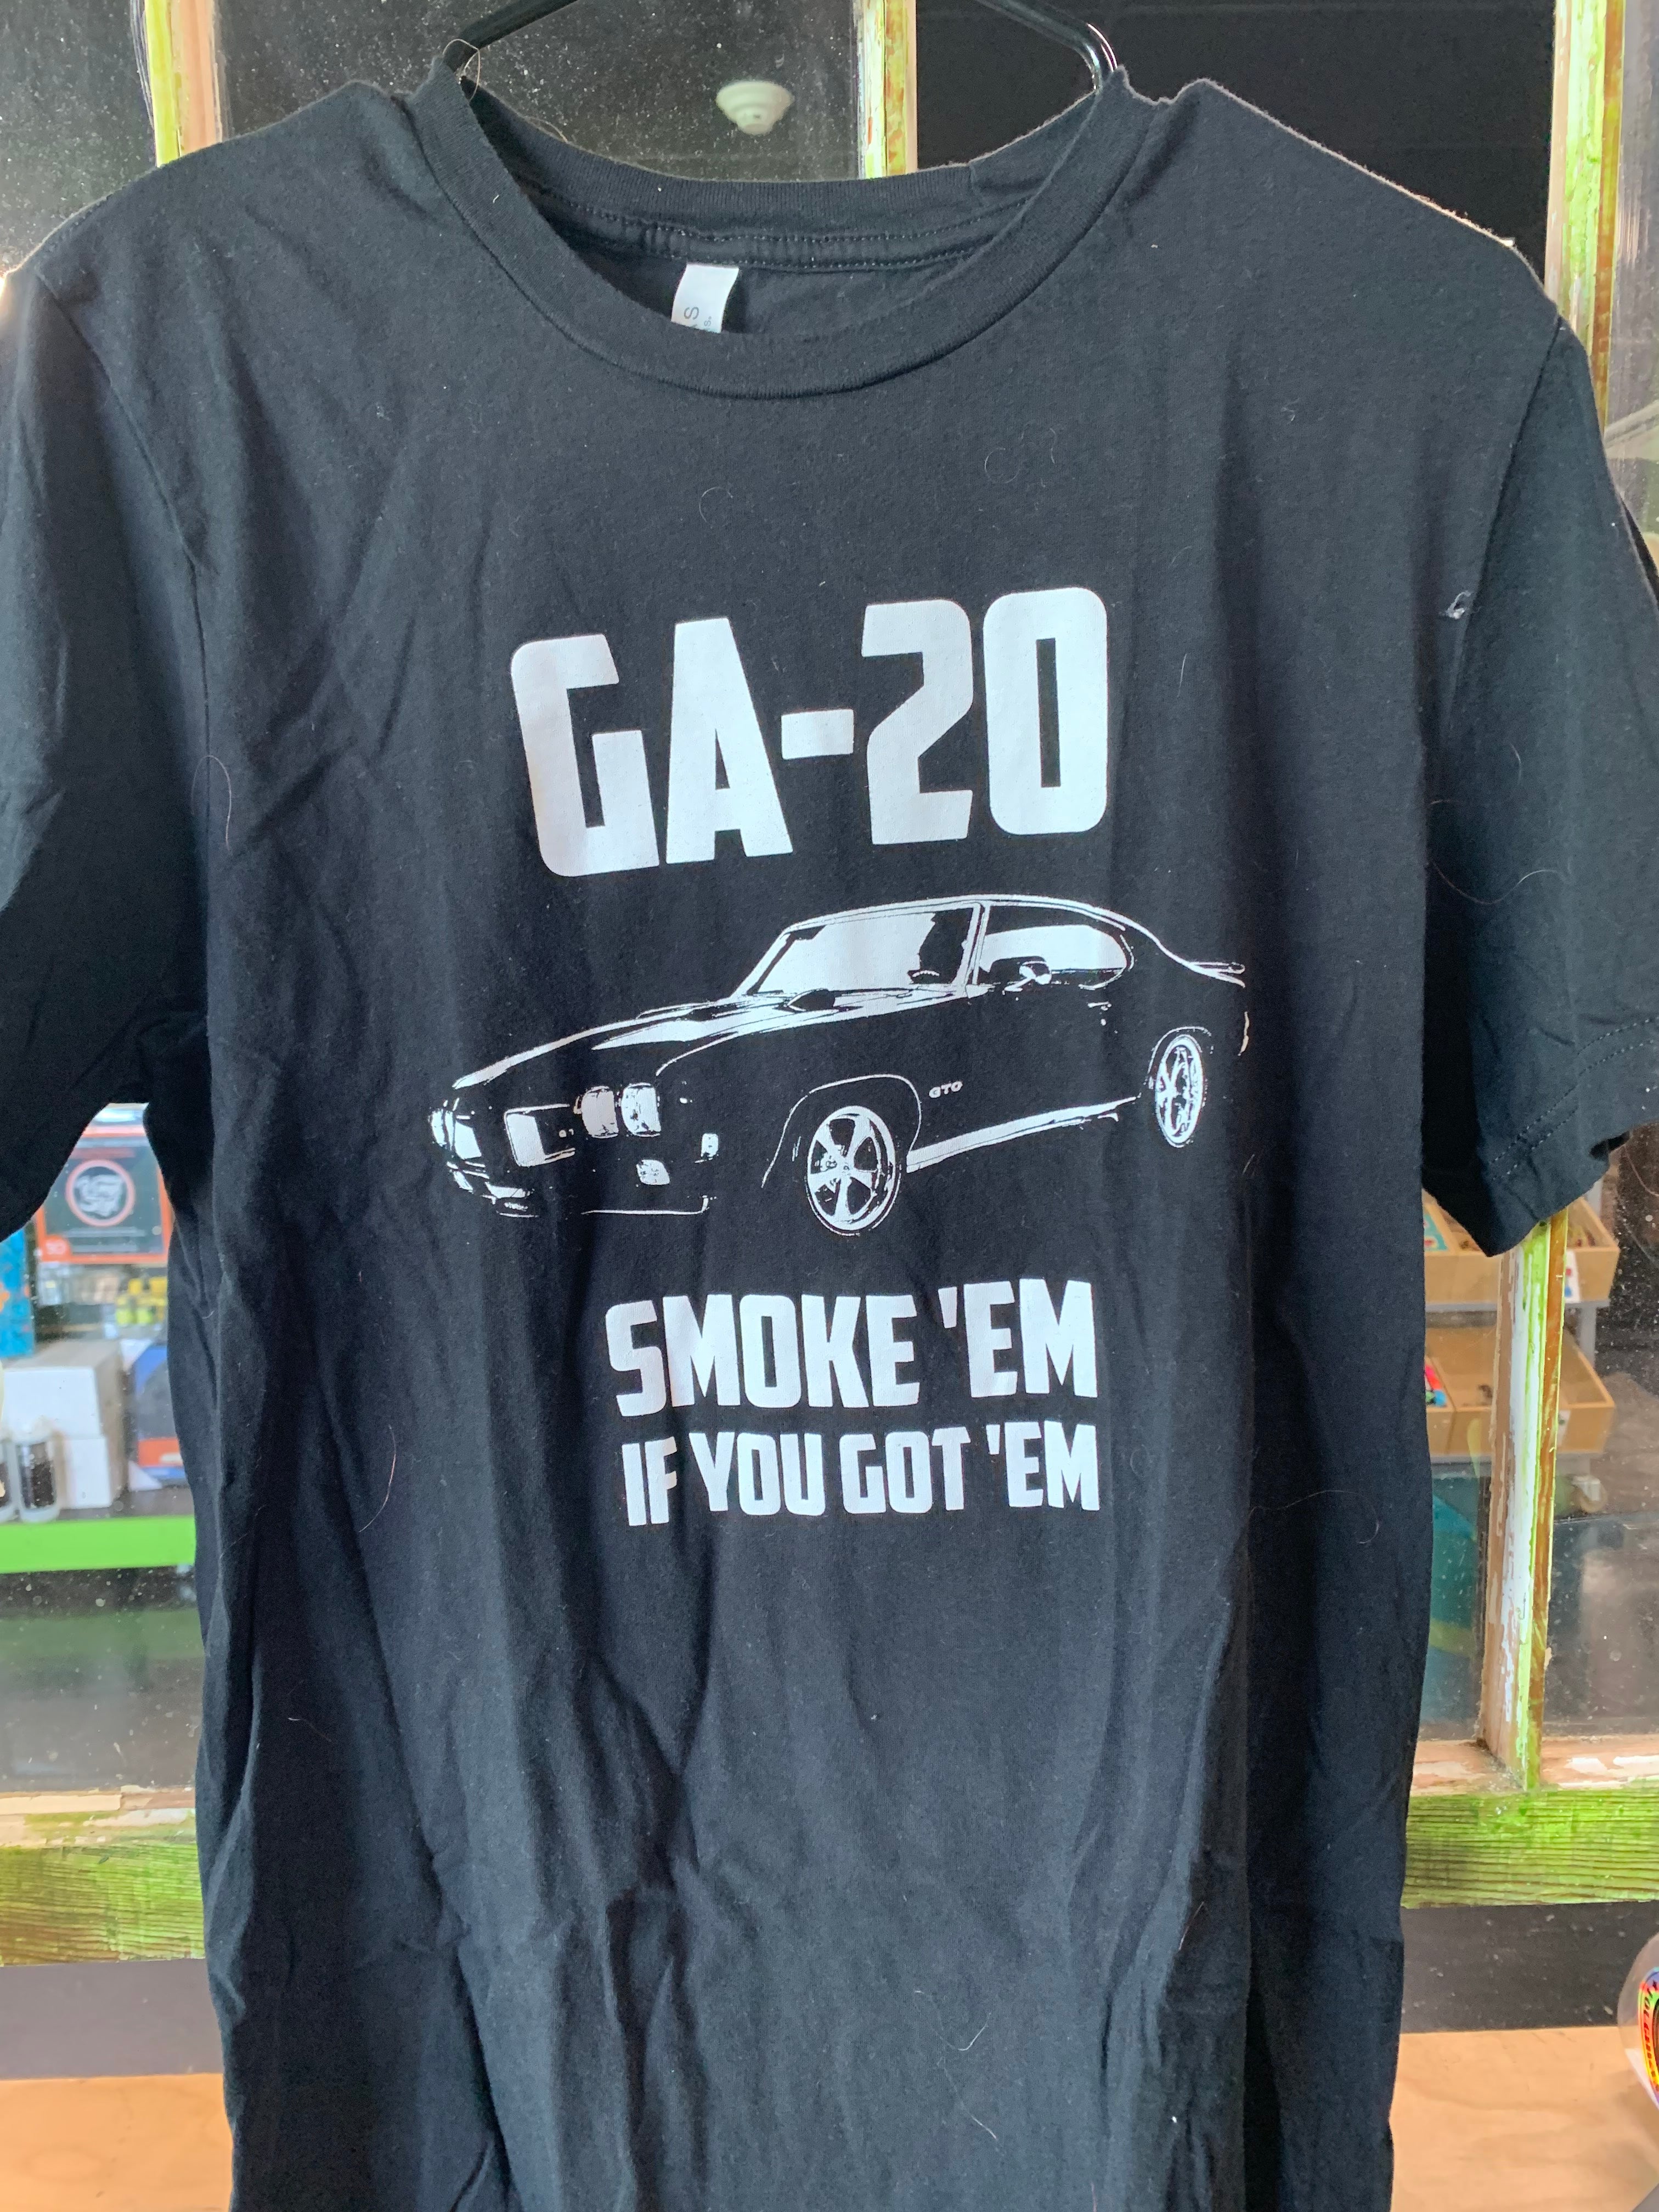 GA-20 Smoke Em If You Got Em T-Shirt, Black, L